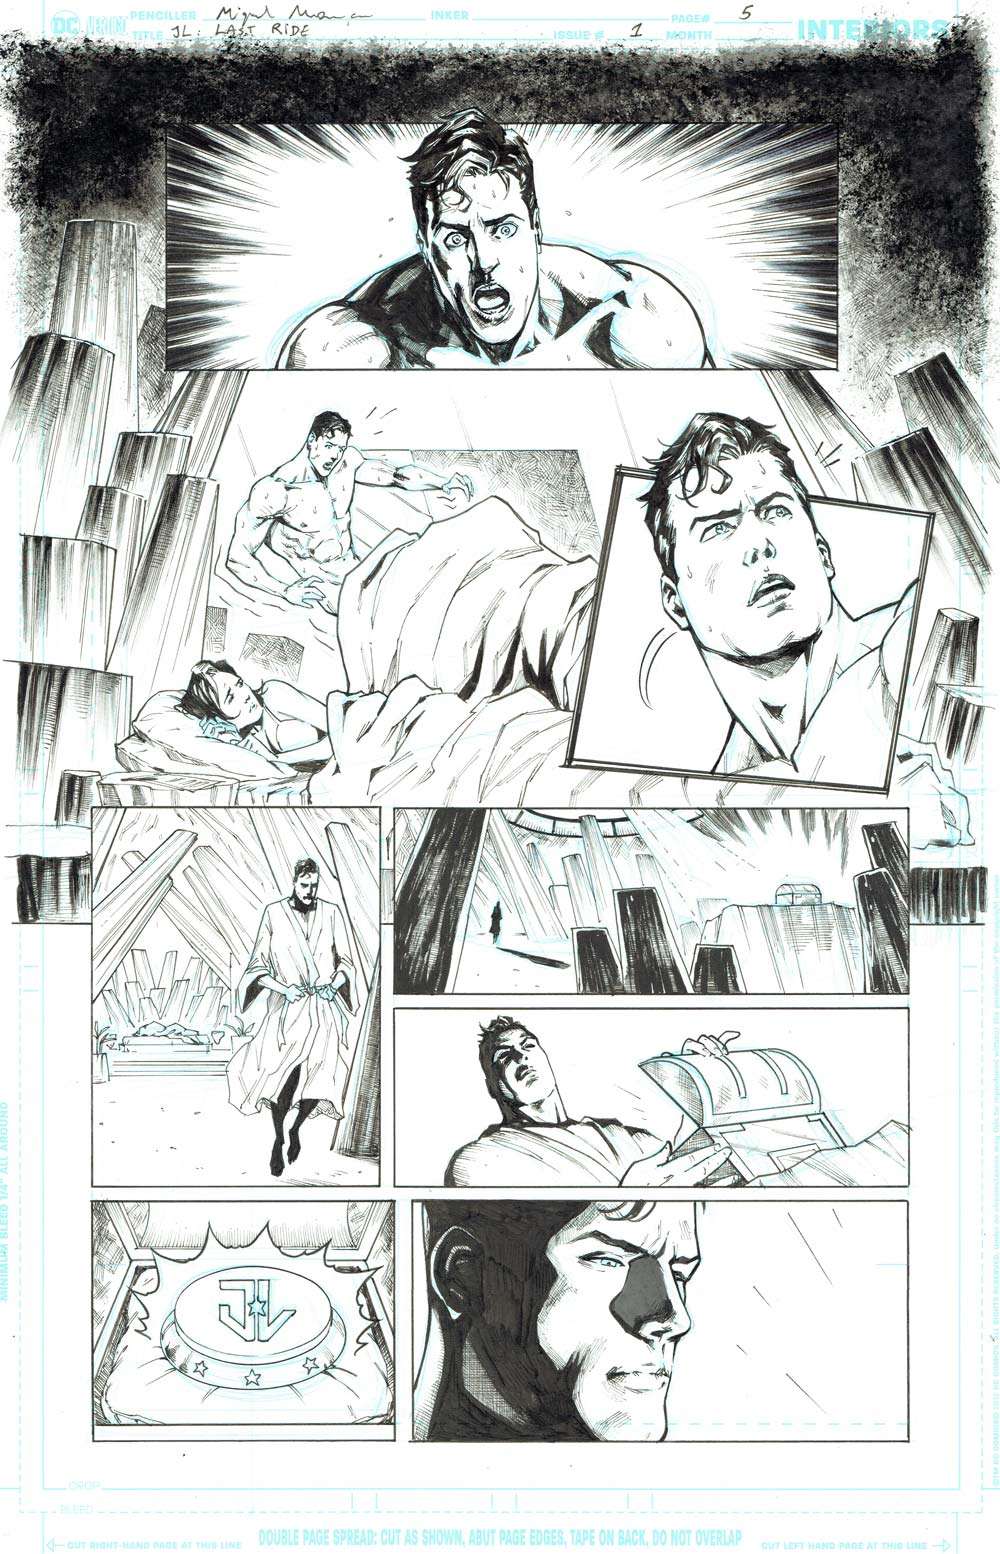 Justice League - LastRide #1 (page 5)